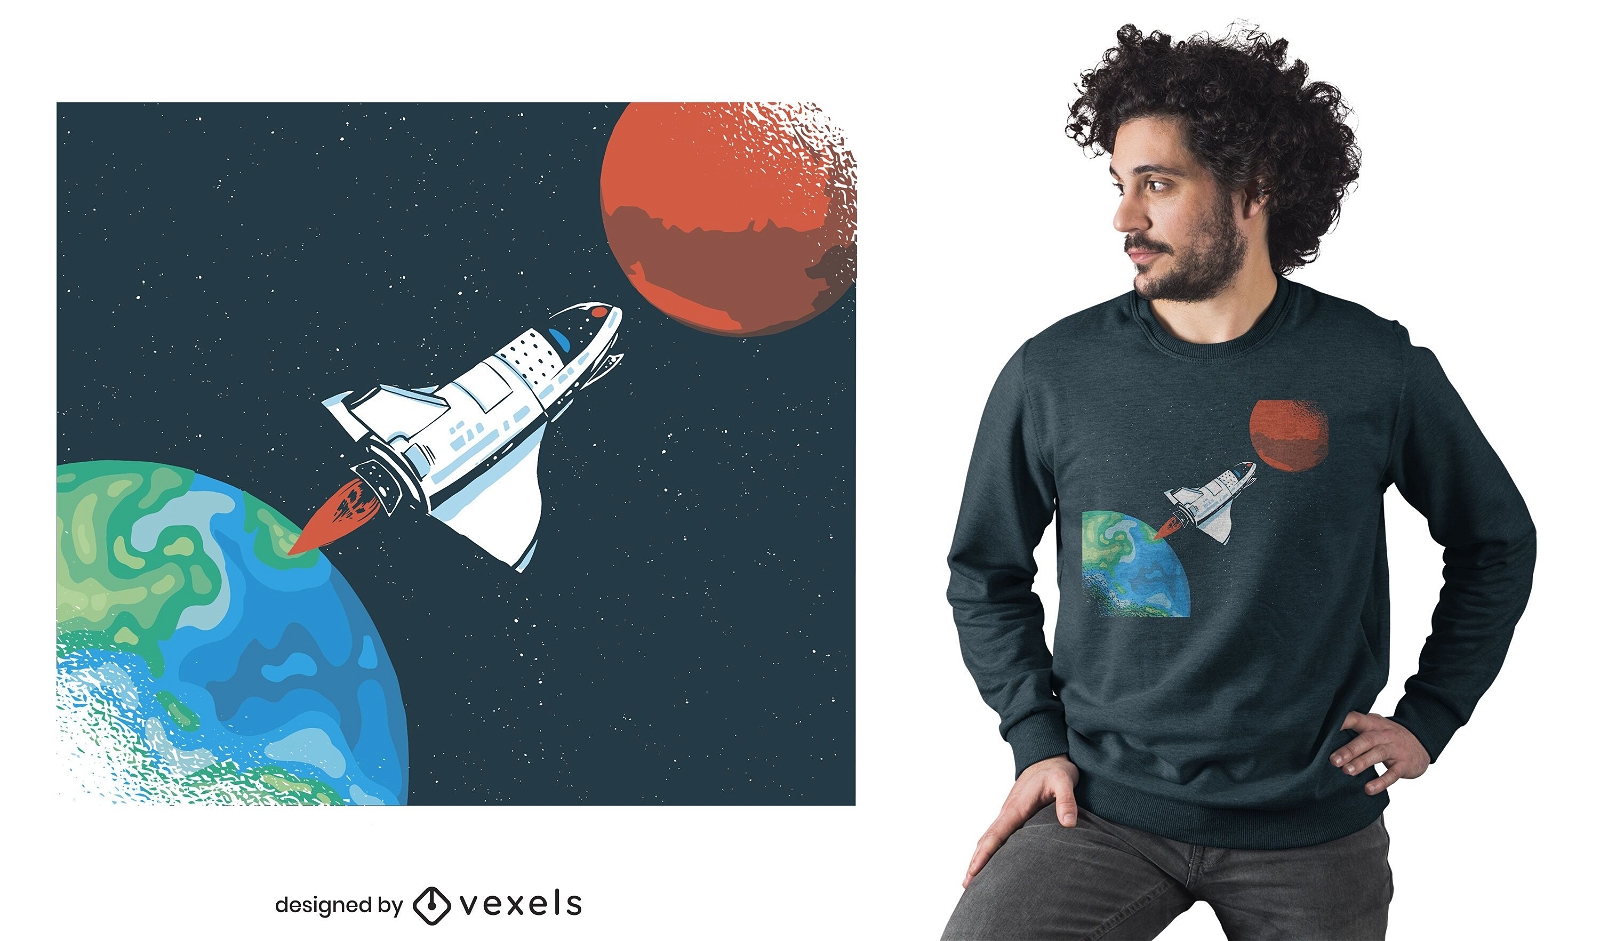 Spaceship earth t-shirt design